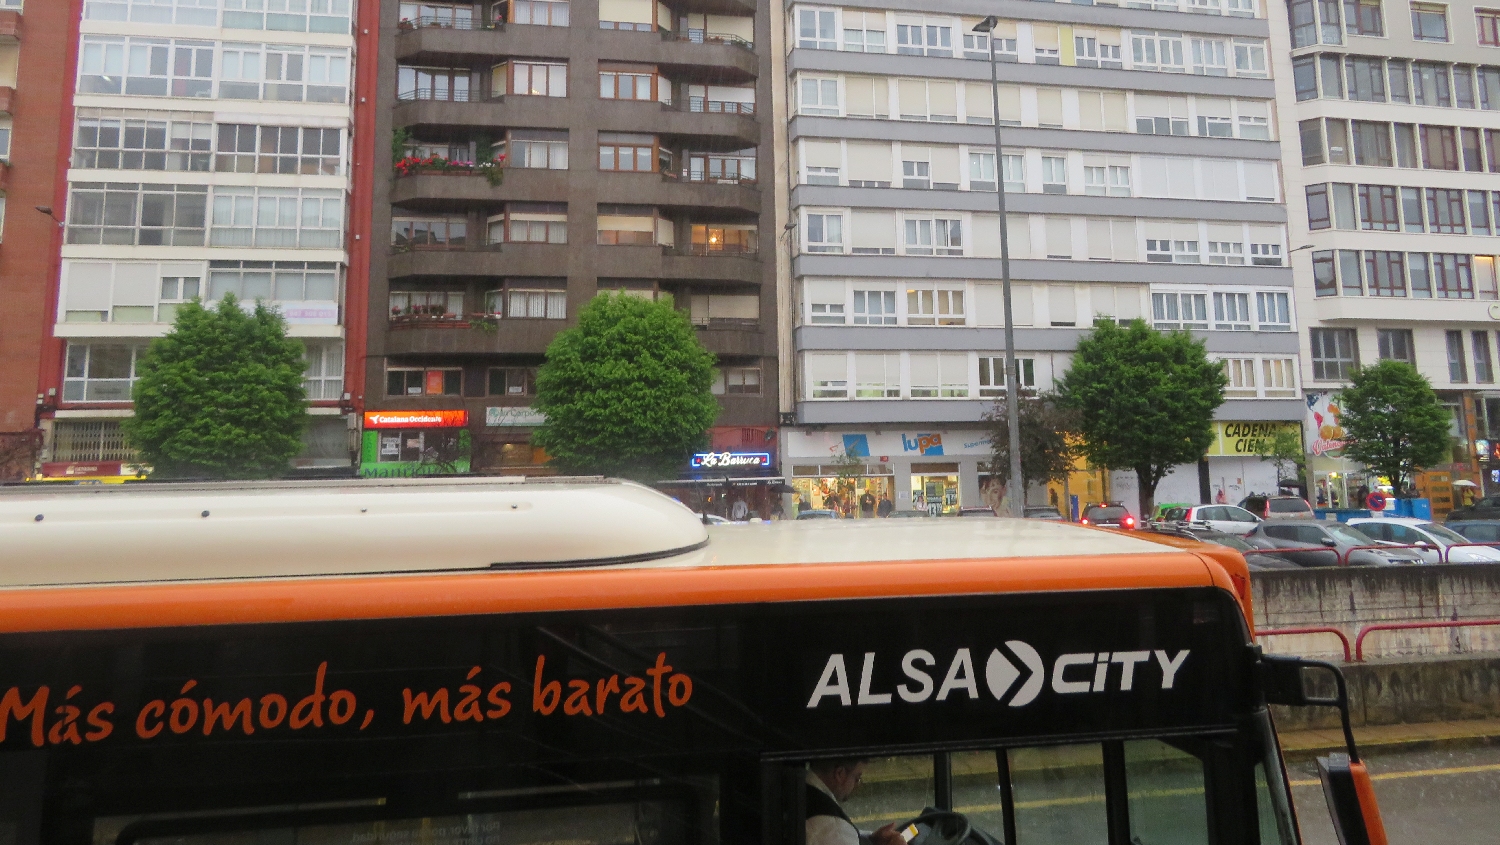 Camino Primitivo, Santander városközpont a buszpályaudvar felől fotózva, ömlik az eső